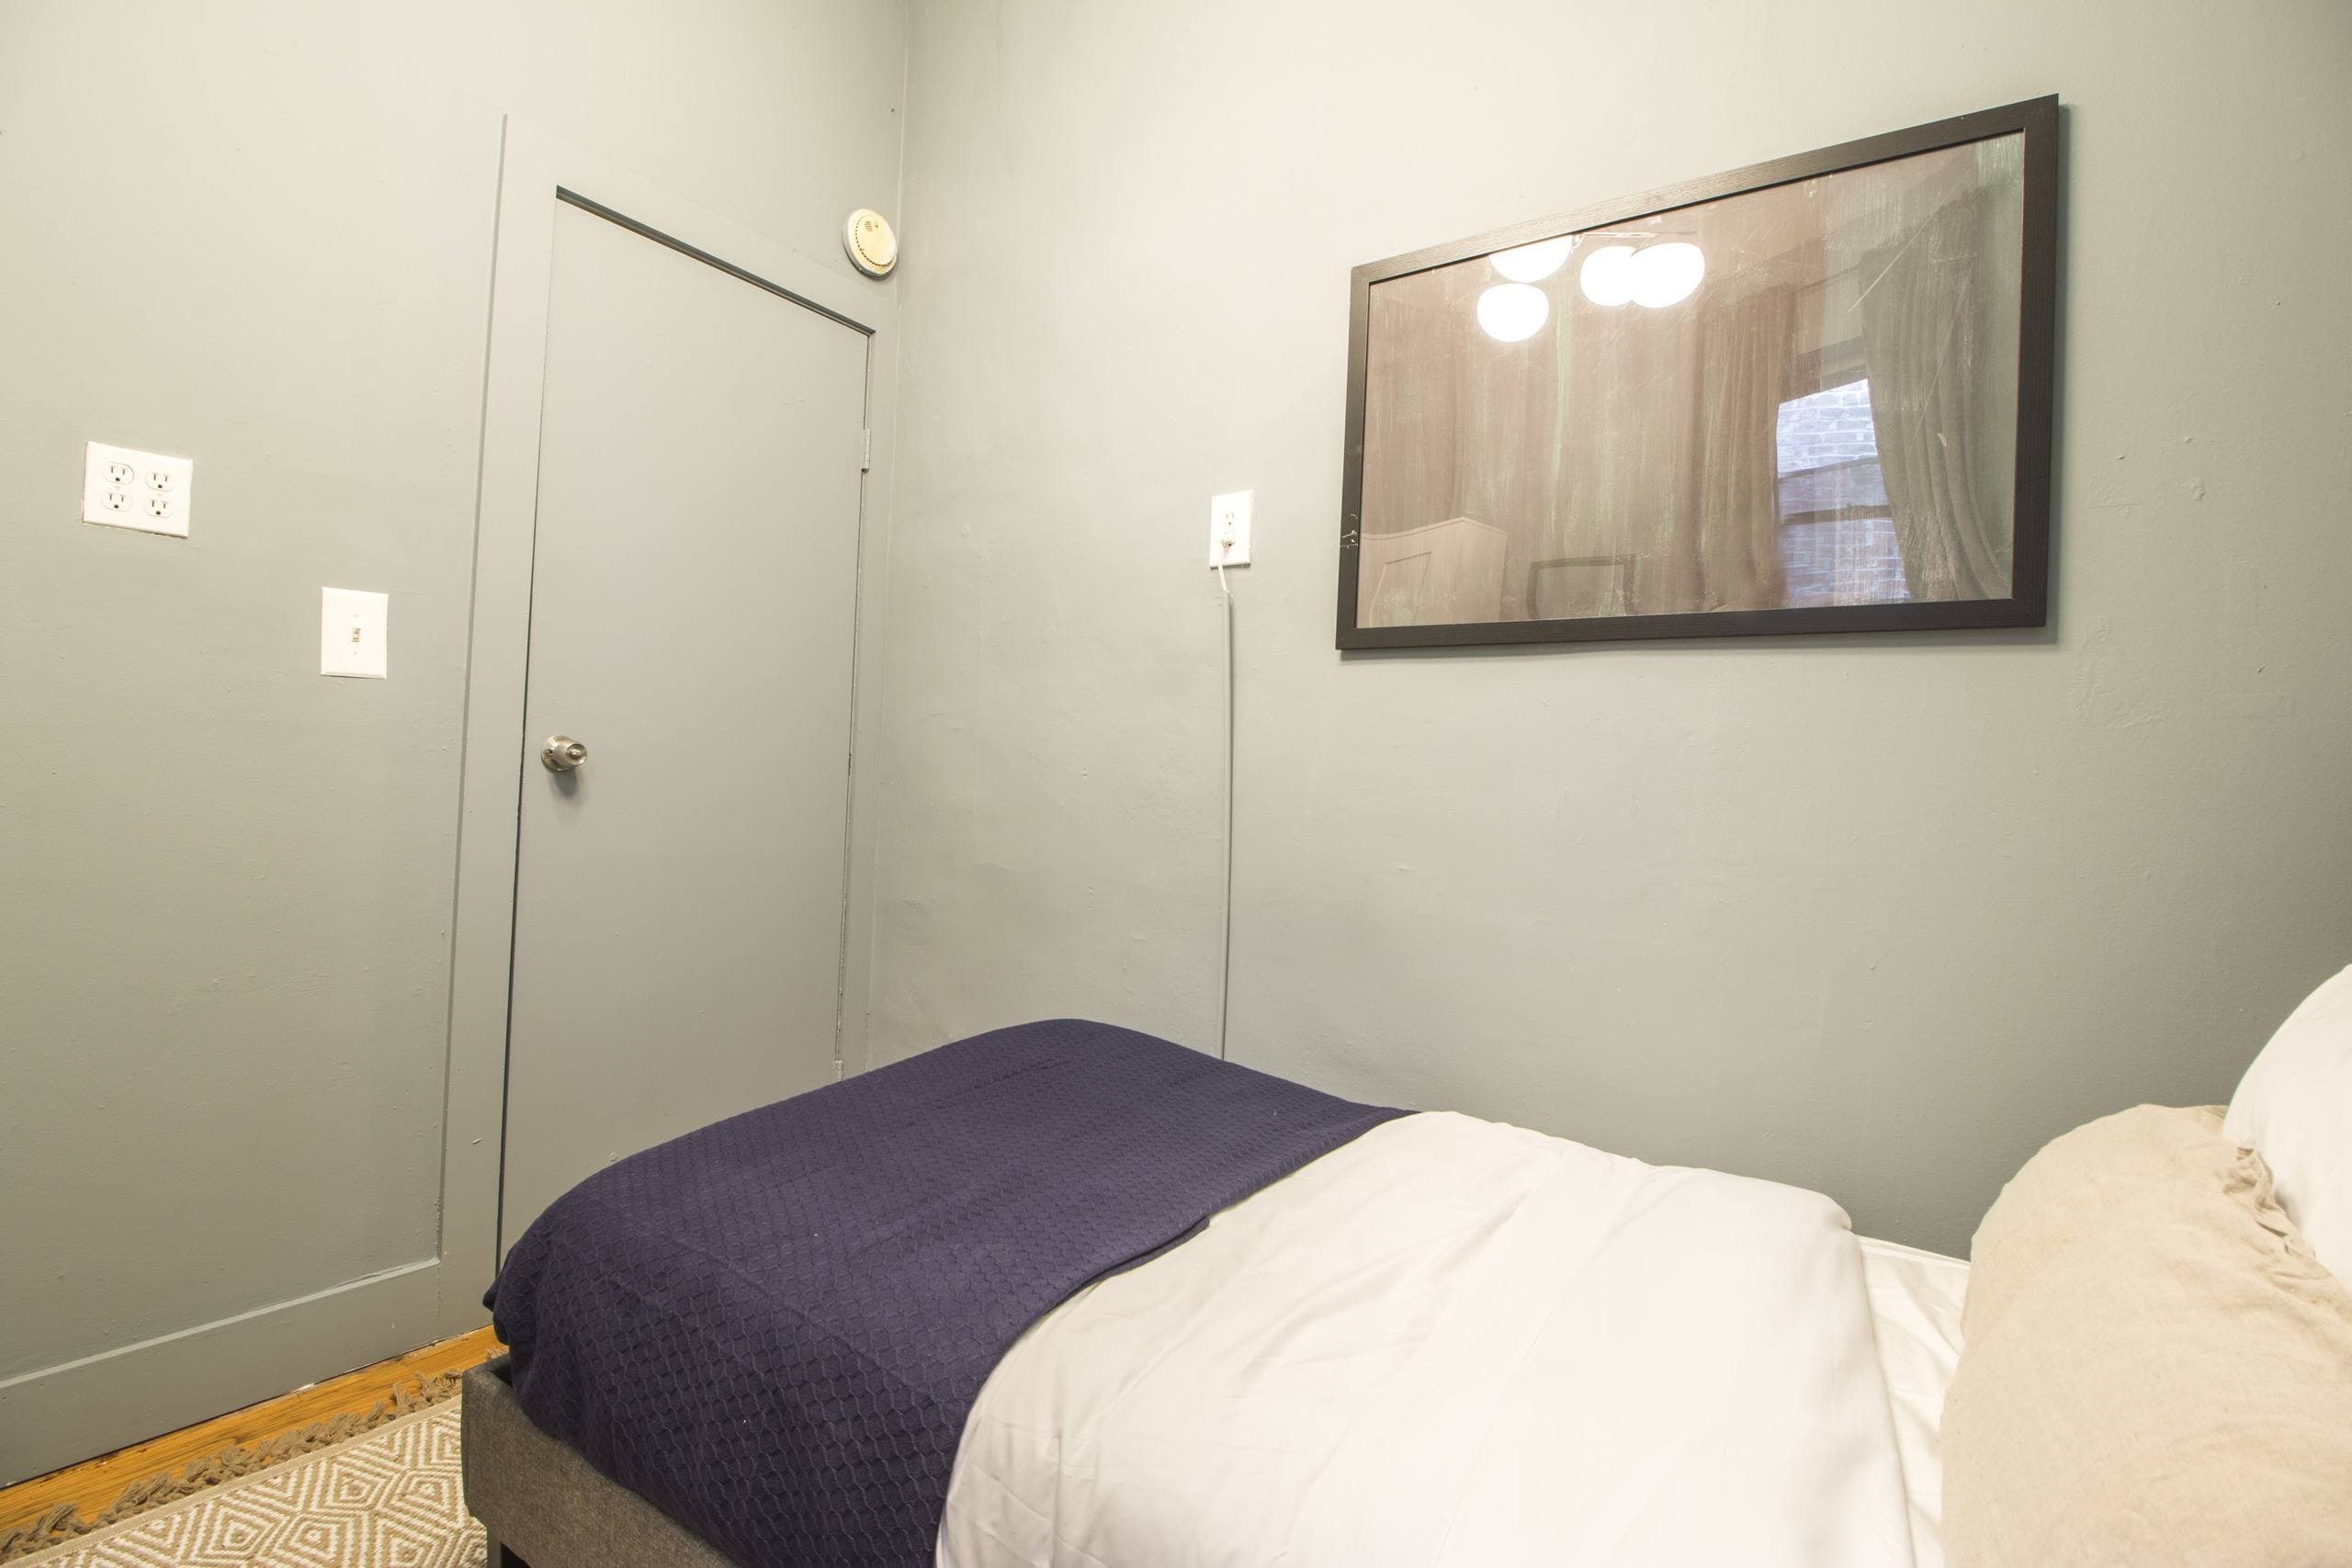 Photo 11 of #942: Queen Bedroom B at June Homes